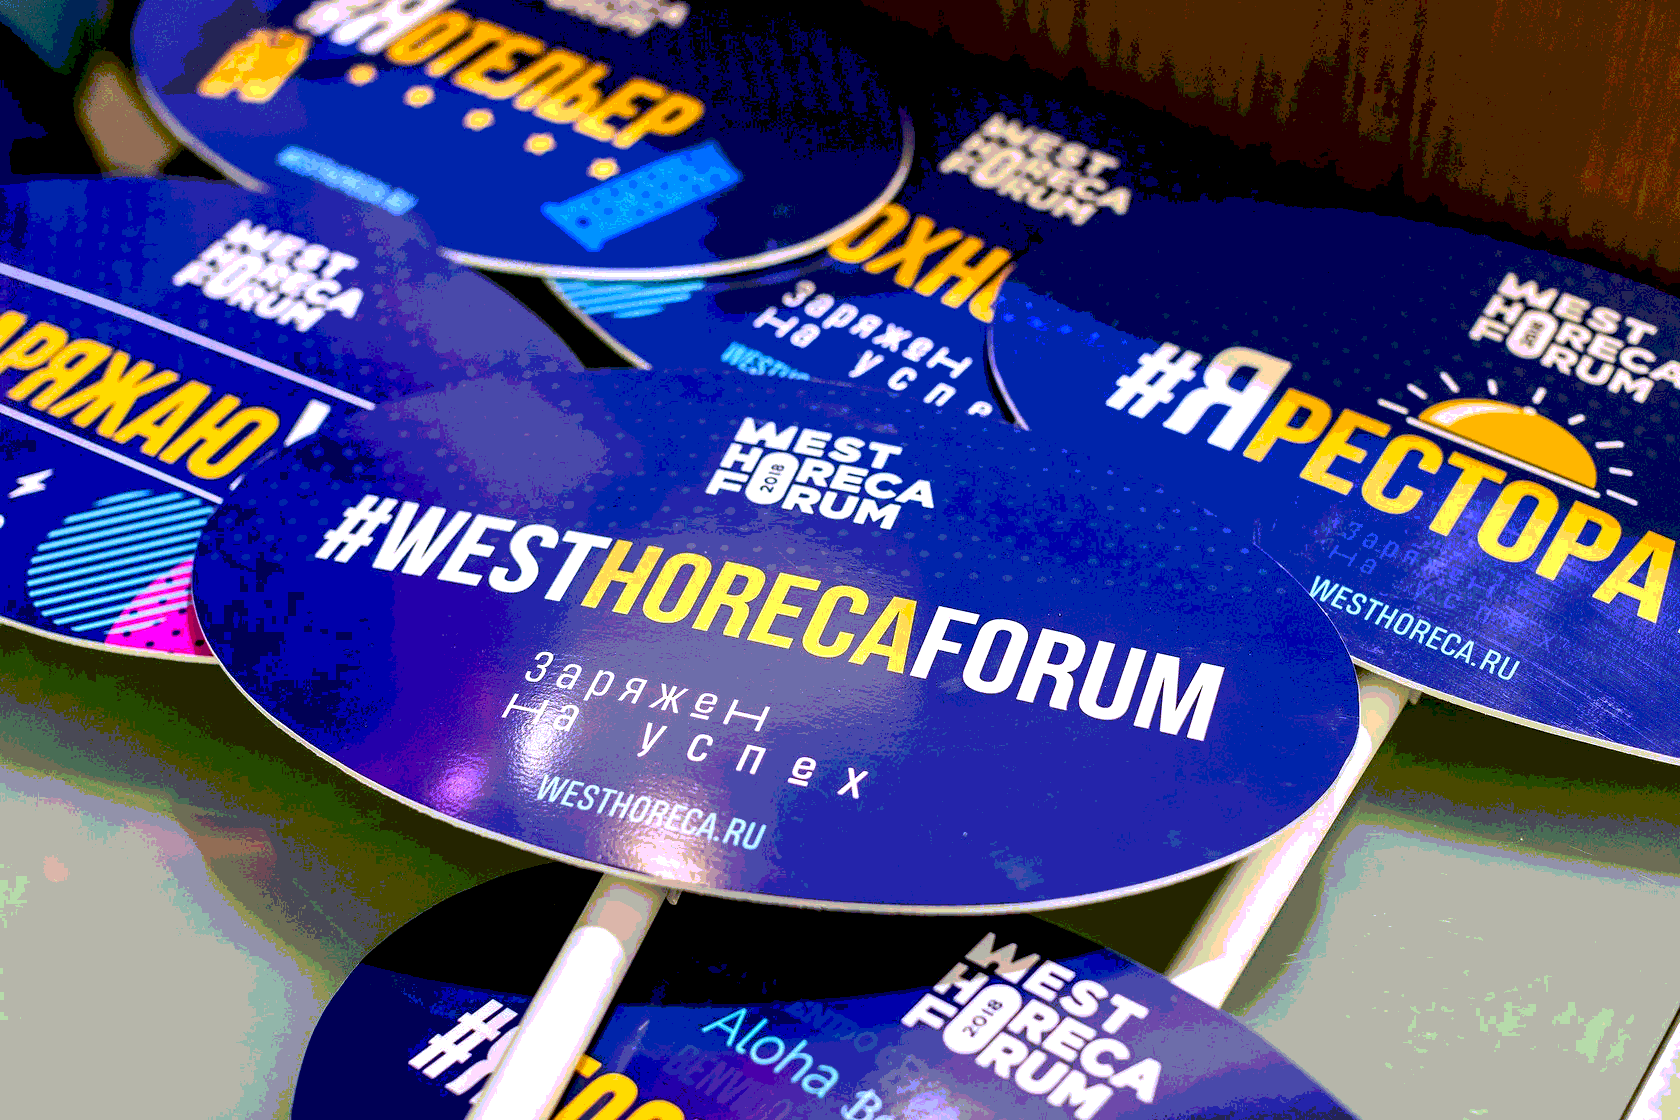 Какие спикеры будут на West HoReCa Forum?